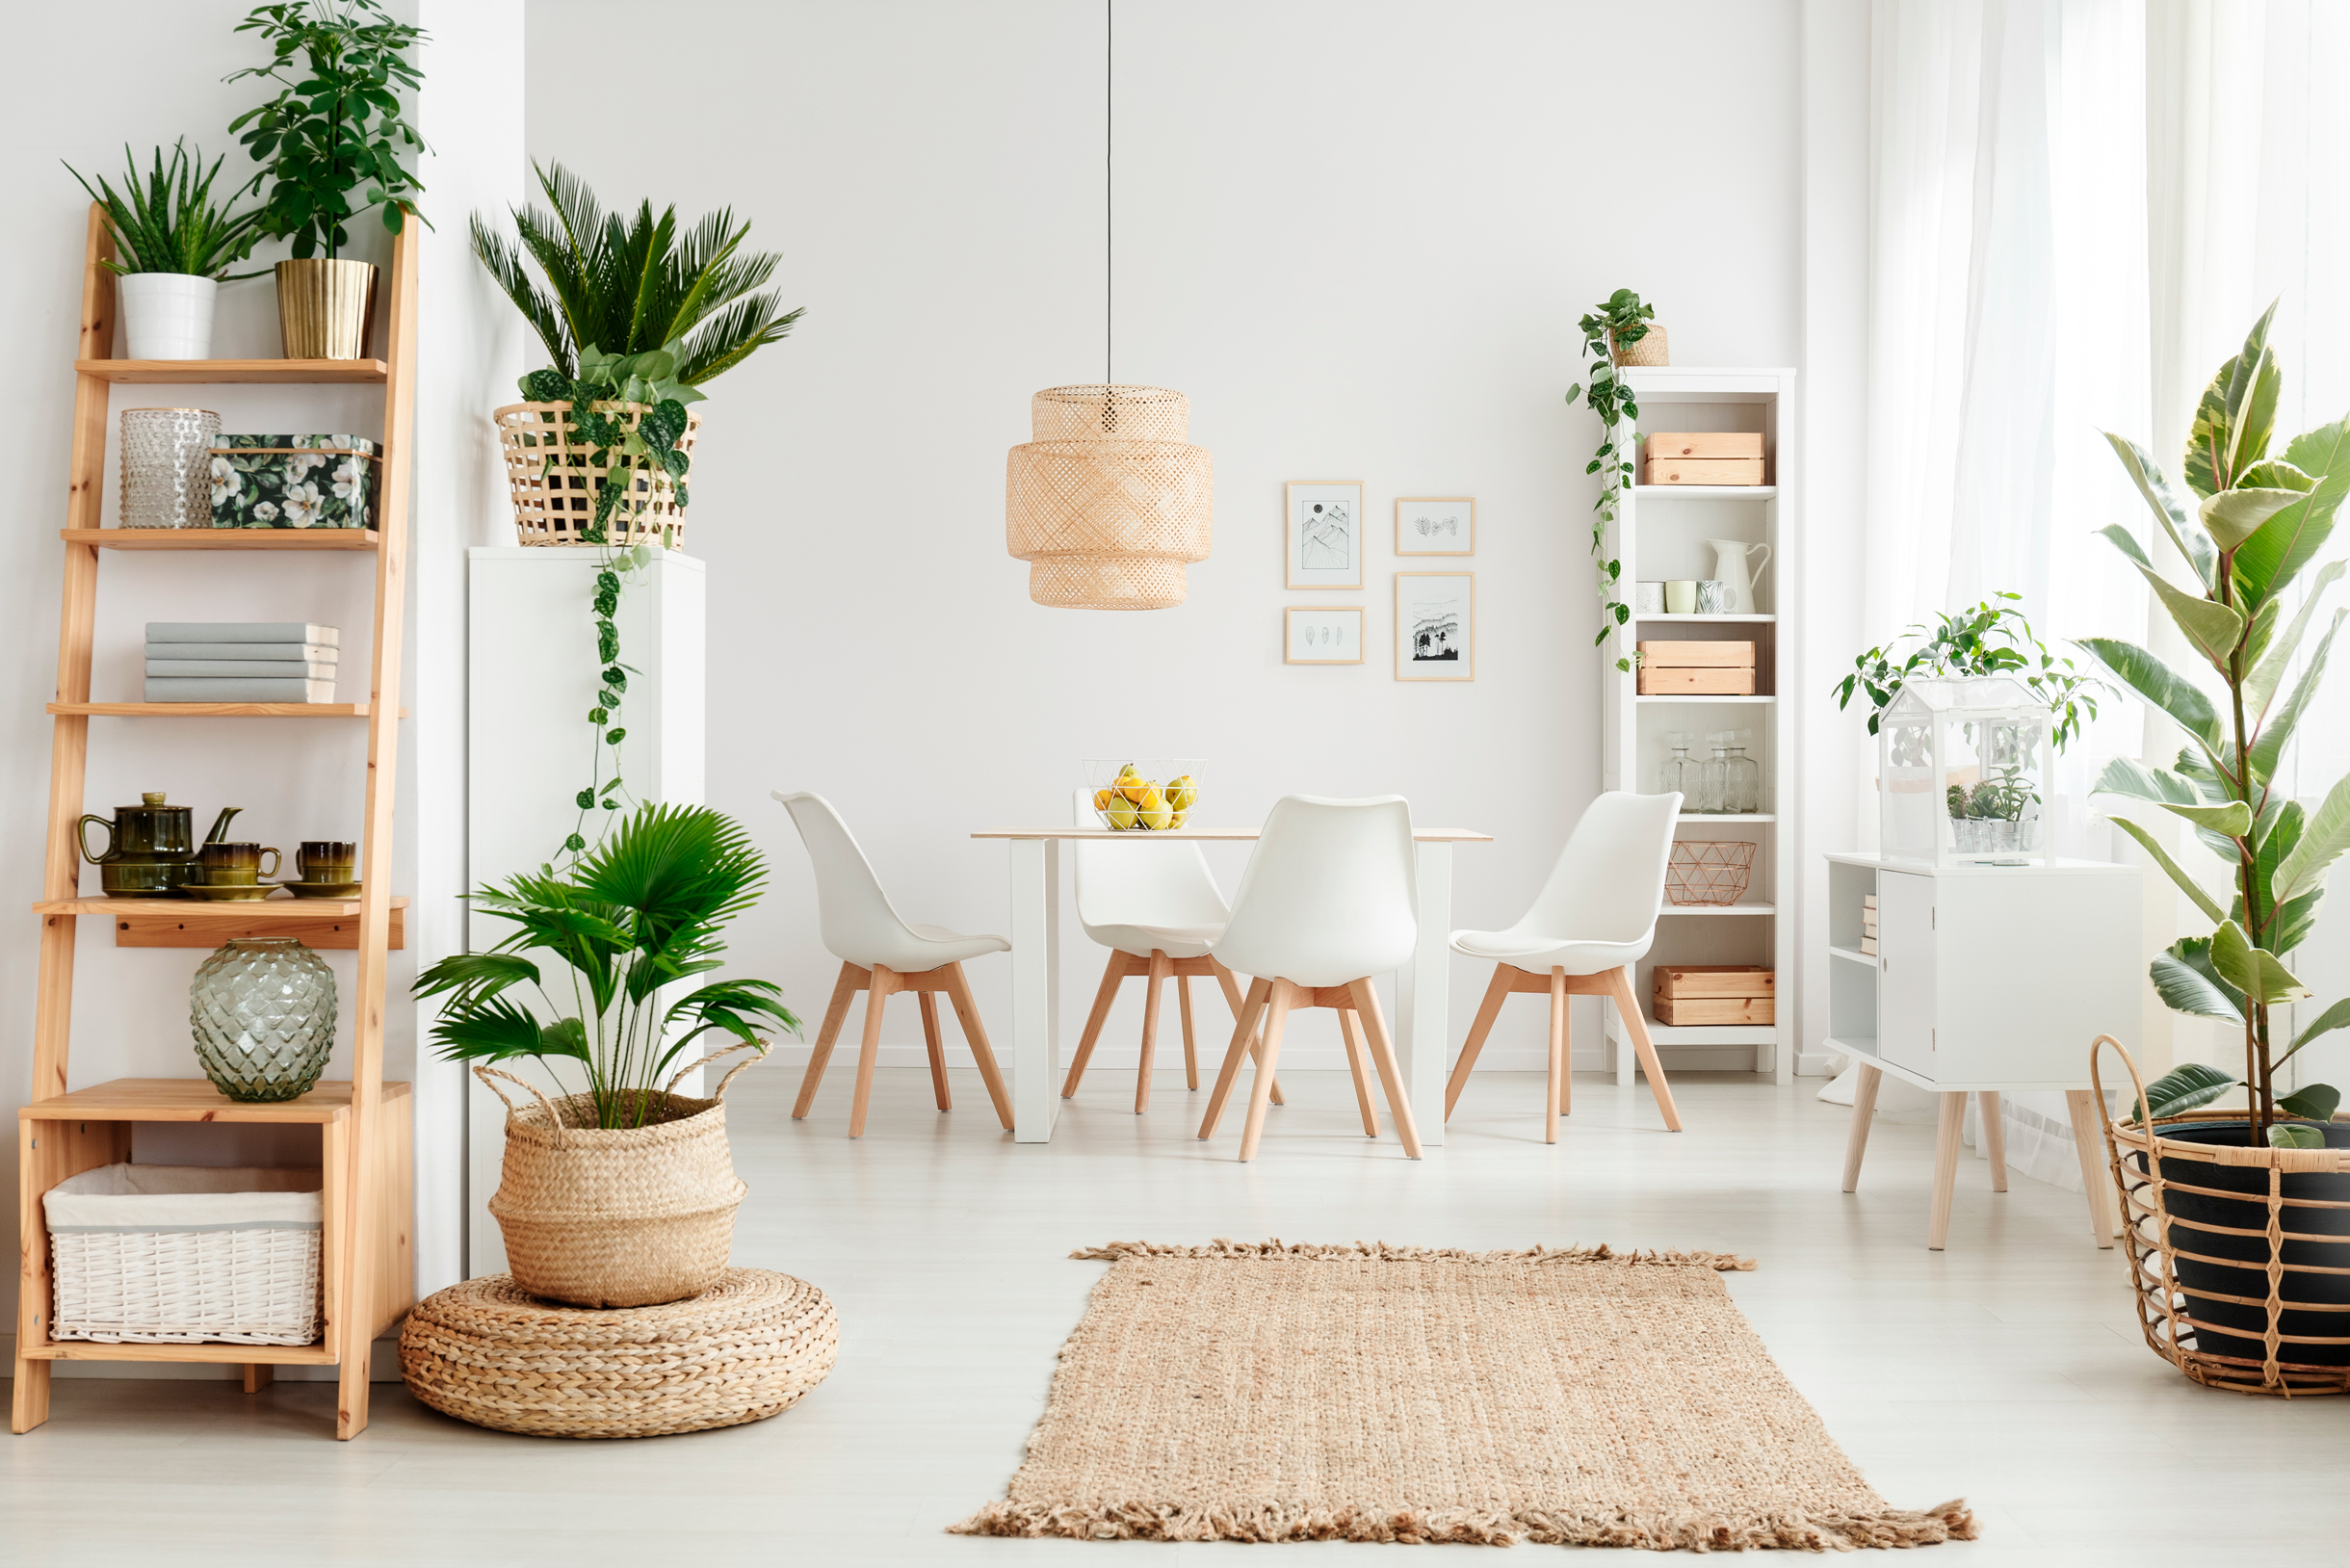 Типичное сочетание для сканди-мебели — белый и цвет натурального светлого дерева. Они могут сочетаться как в одном предмете, так и в интерьере в целом. Фотография: Ground Picture / Shutterstock / FOTODOM